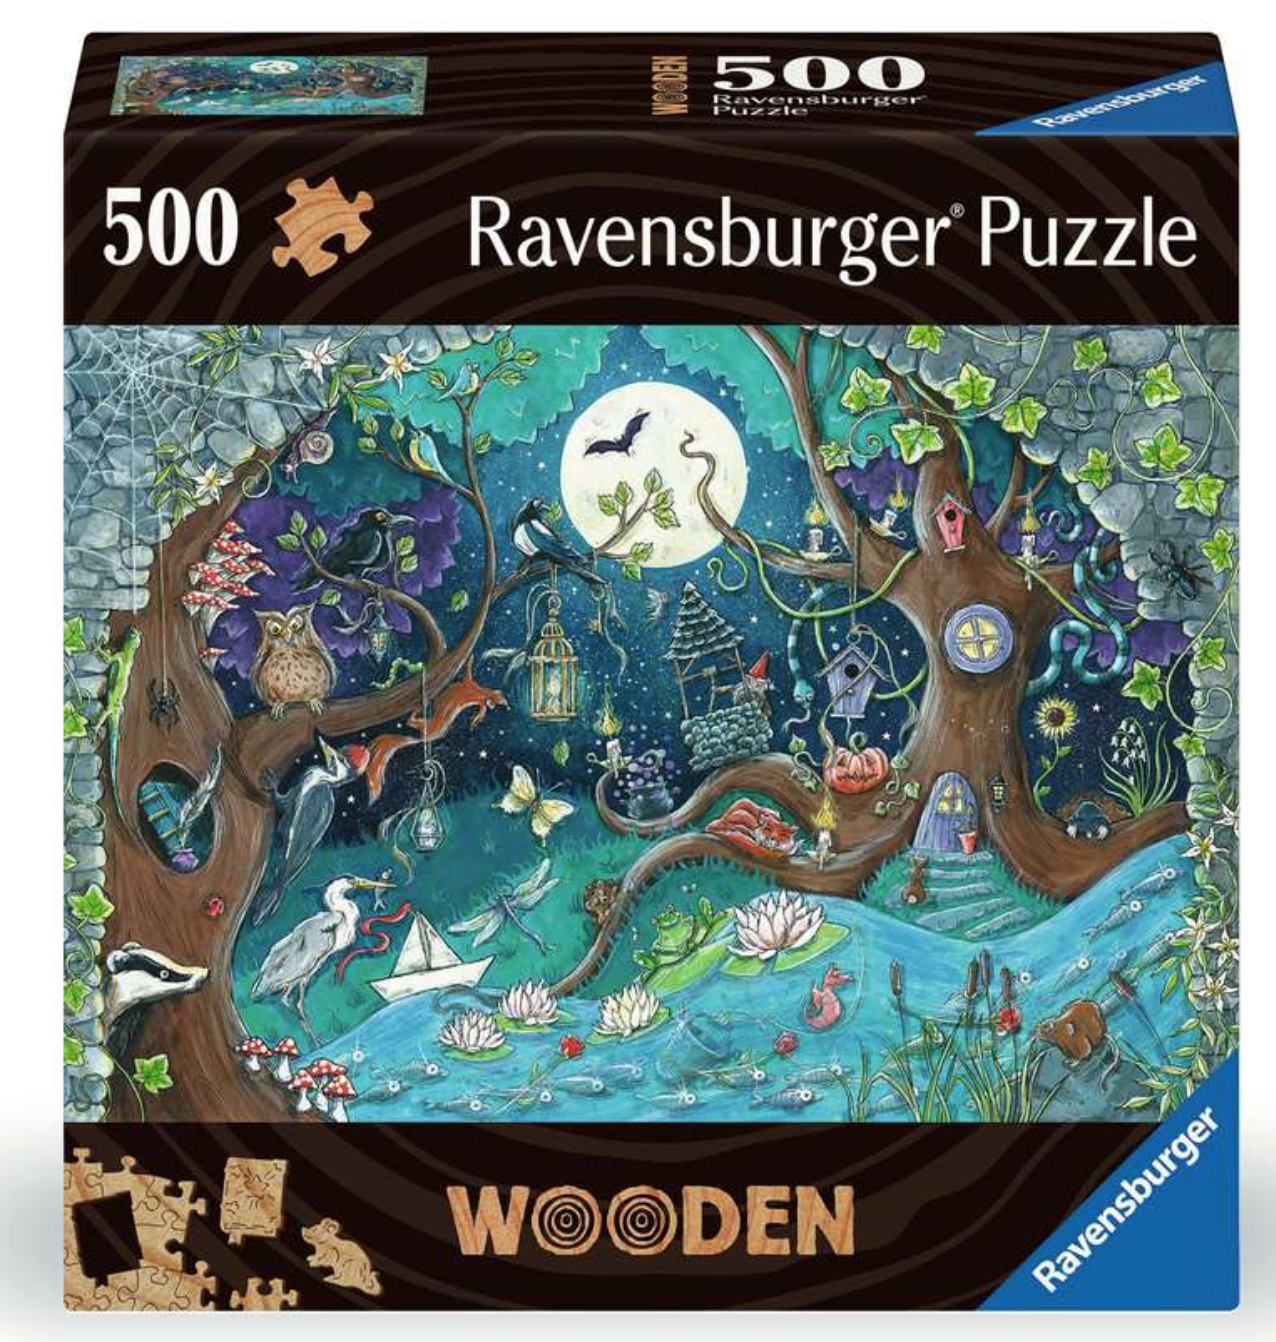 Acheter des Ravensburger Puzzels en bois bon marché? Vaste choix! -  Puzzles123